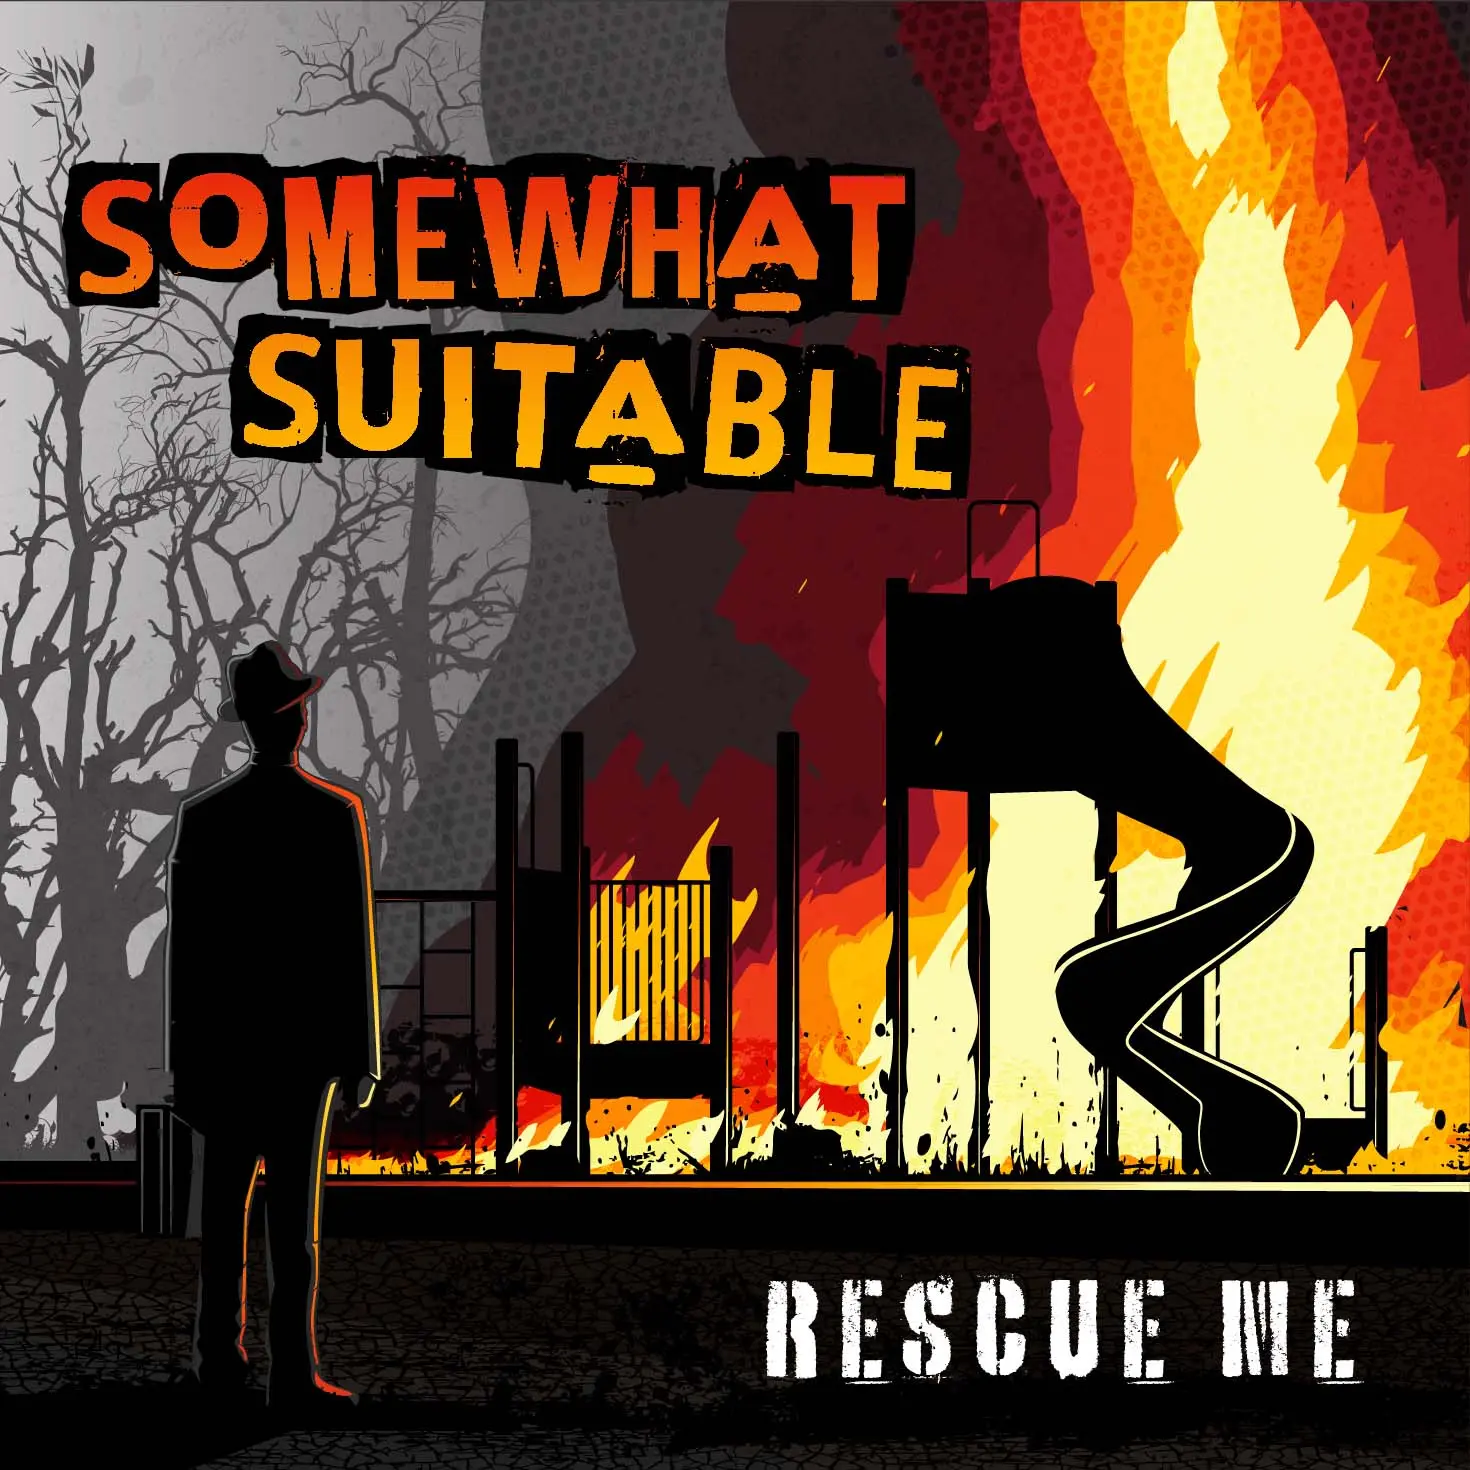 Somewhat Suitable Rescue Me album art